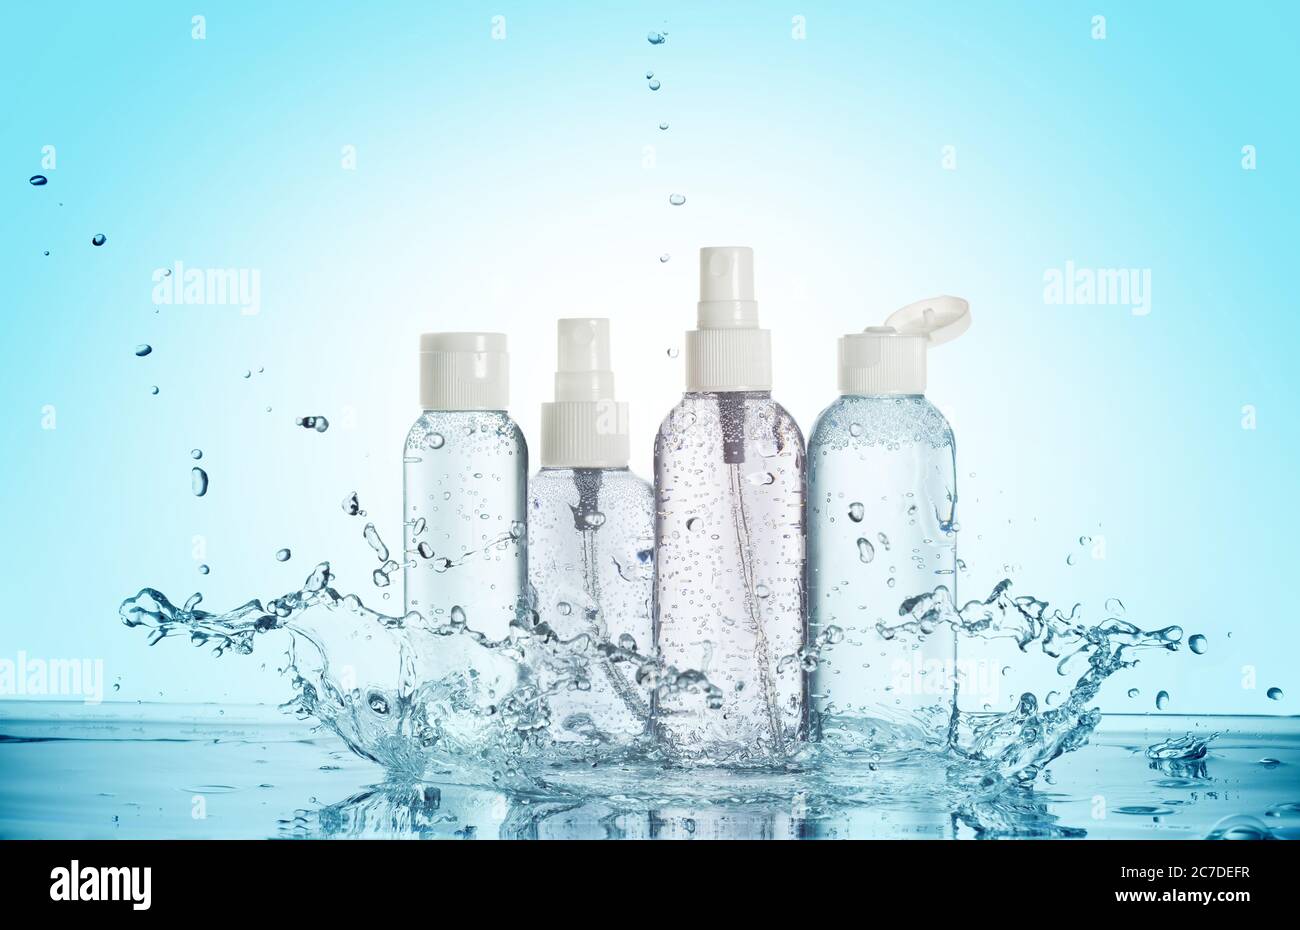 Flaschen von Beauty-Produkten in einem Wasserspritzer isoliert auf blauem Hintergrund Stockfoto